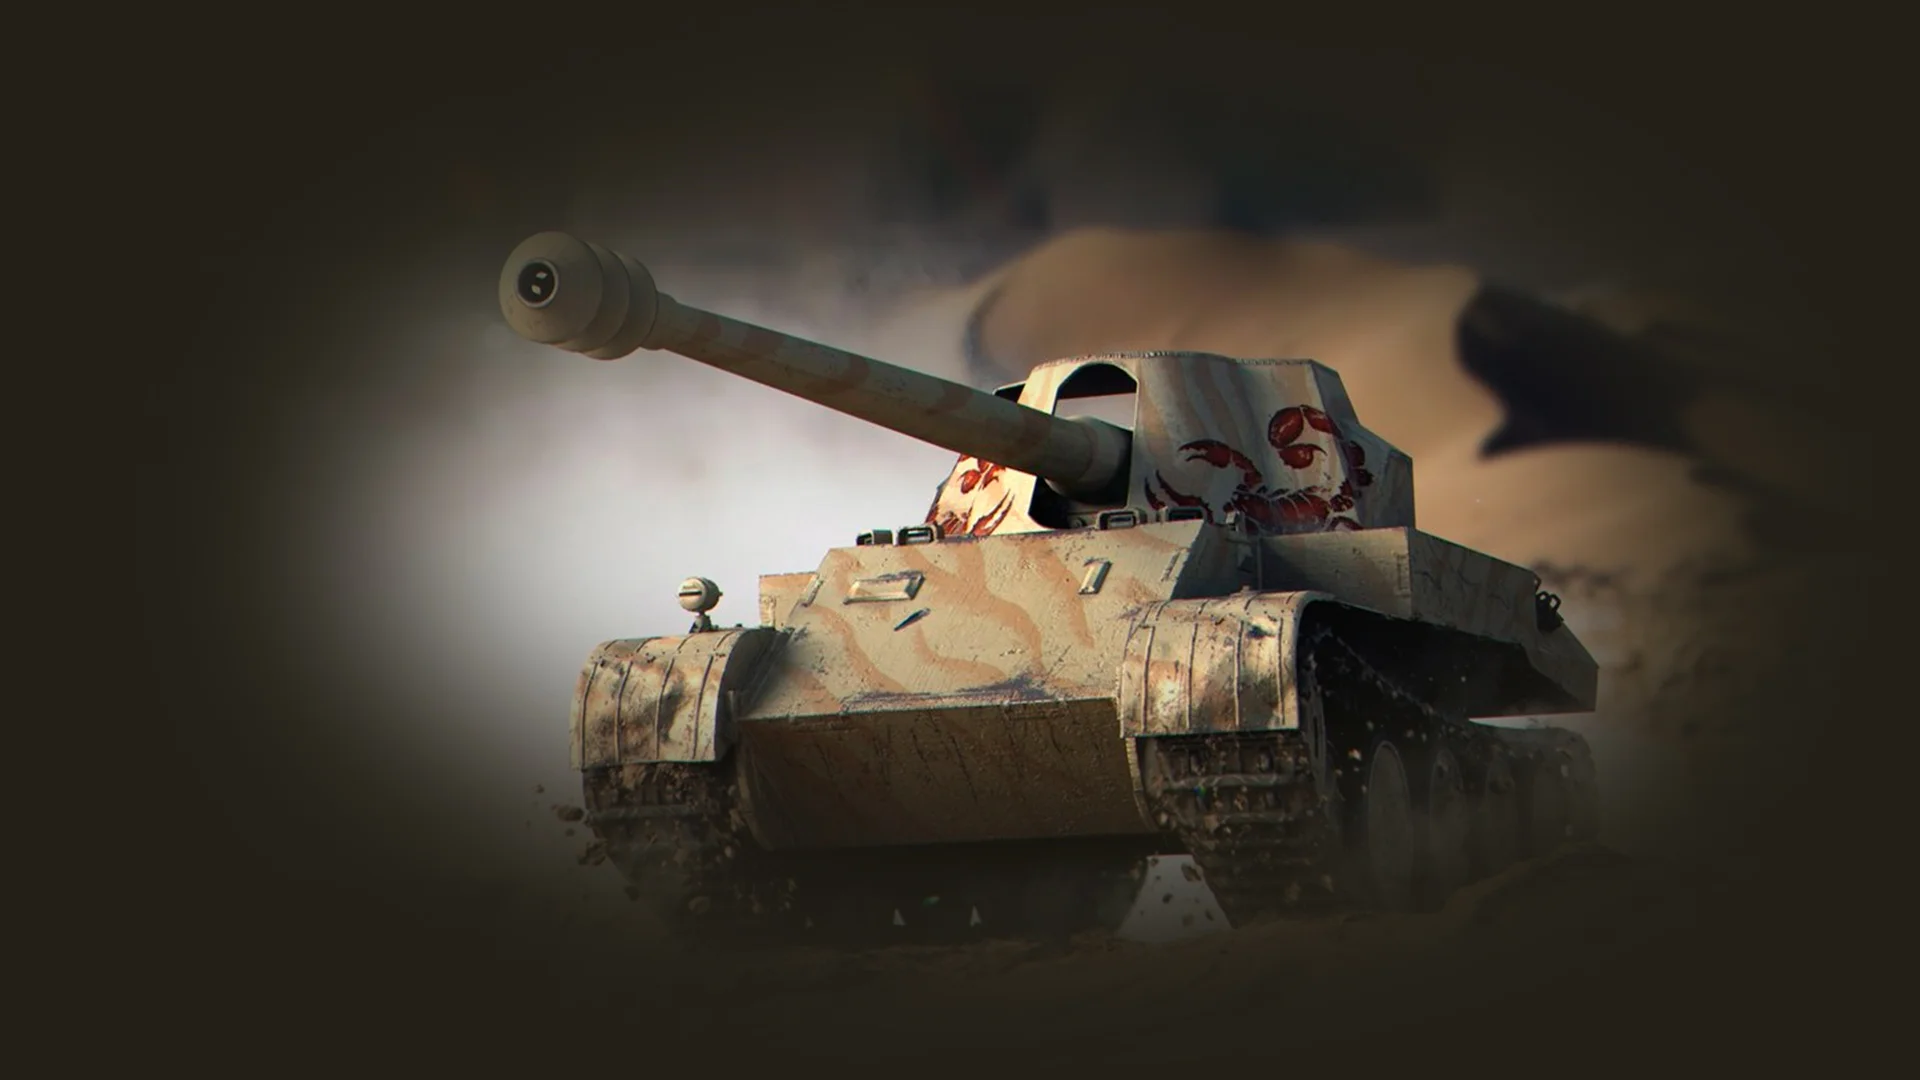 Гайд по World of Tanks 1.0. Лучшие премиум танки 8-го уровня  - фото 4